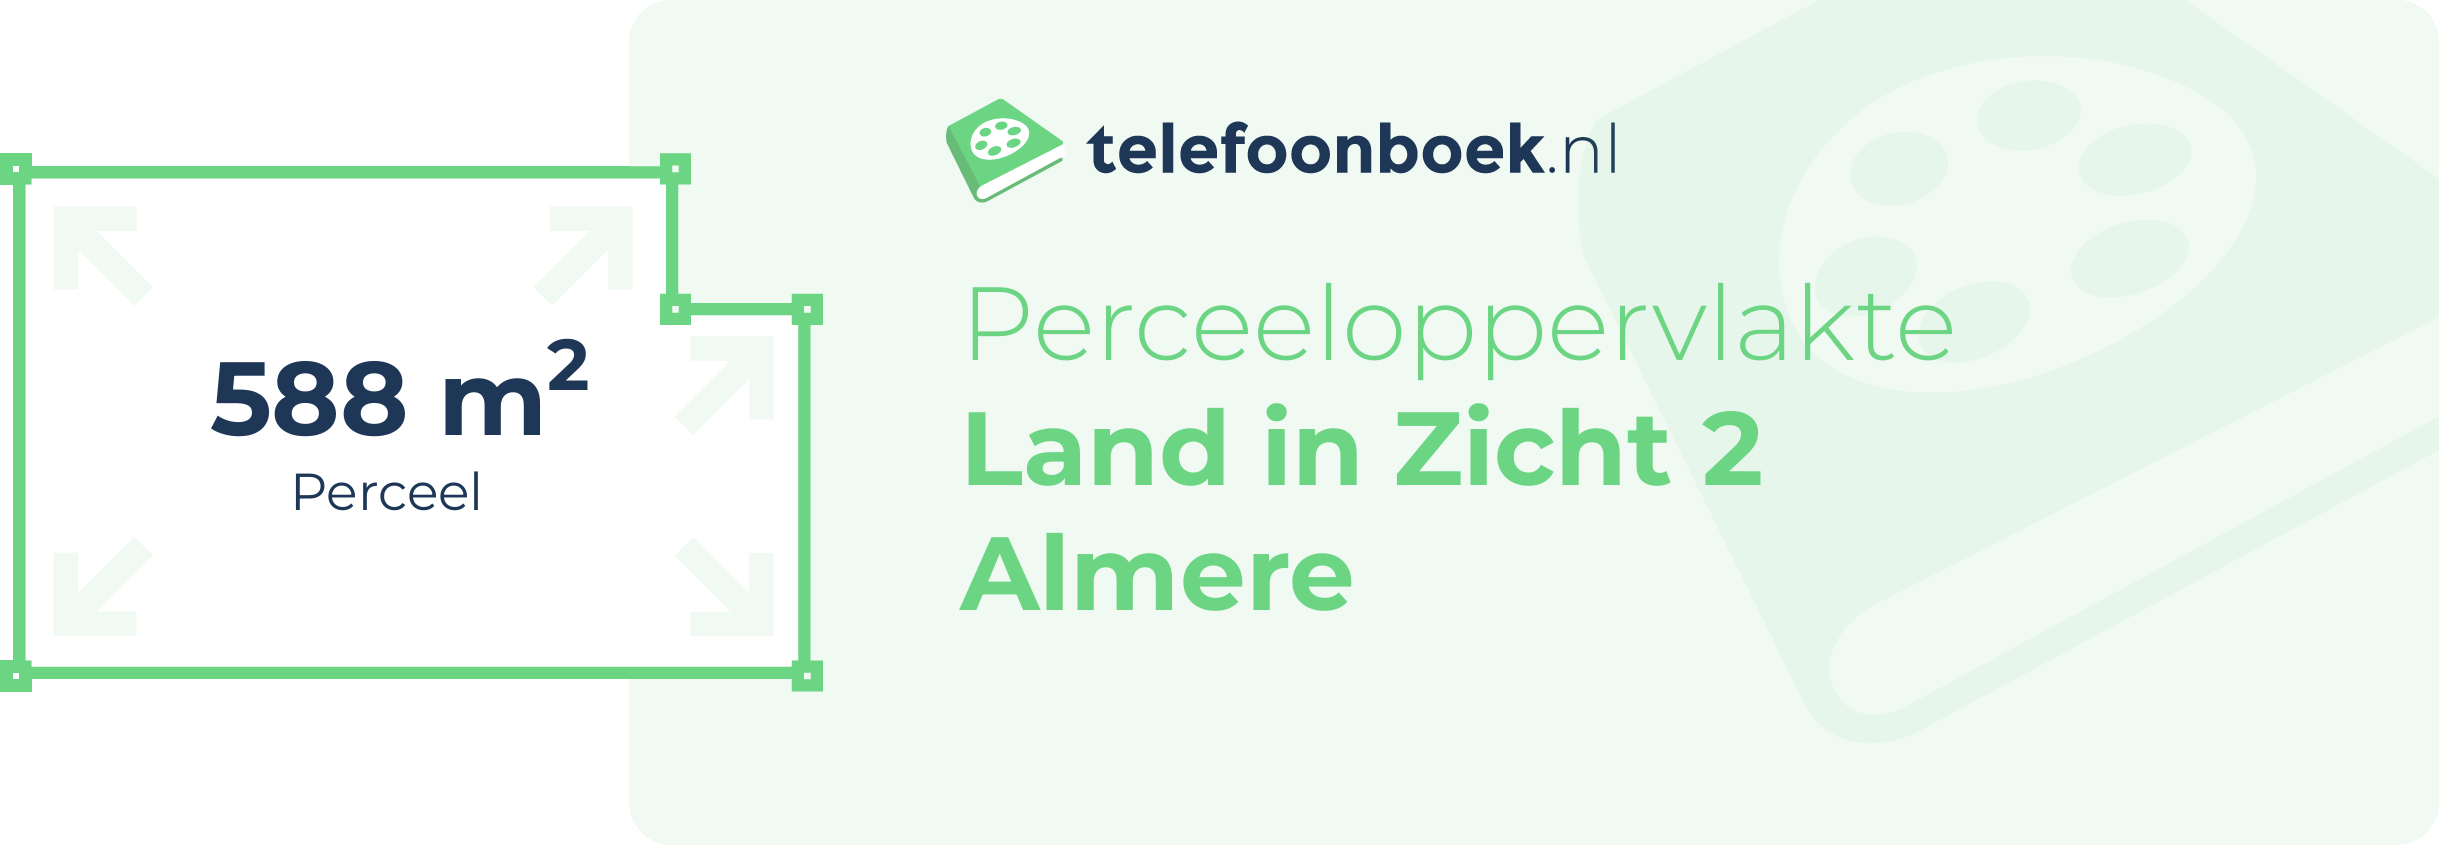 Perceeloppervlakte Land In Zicht 2 Almere